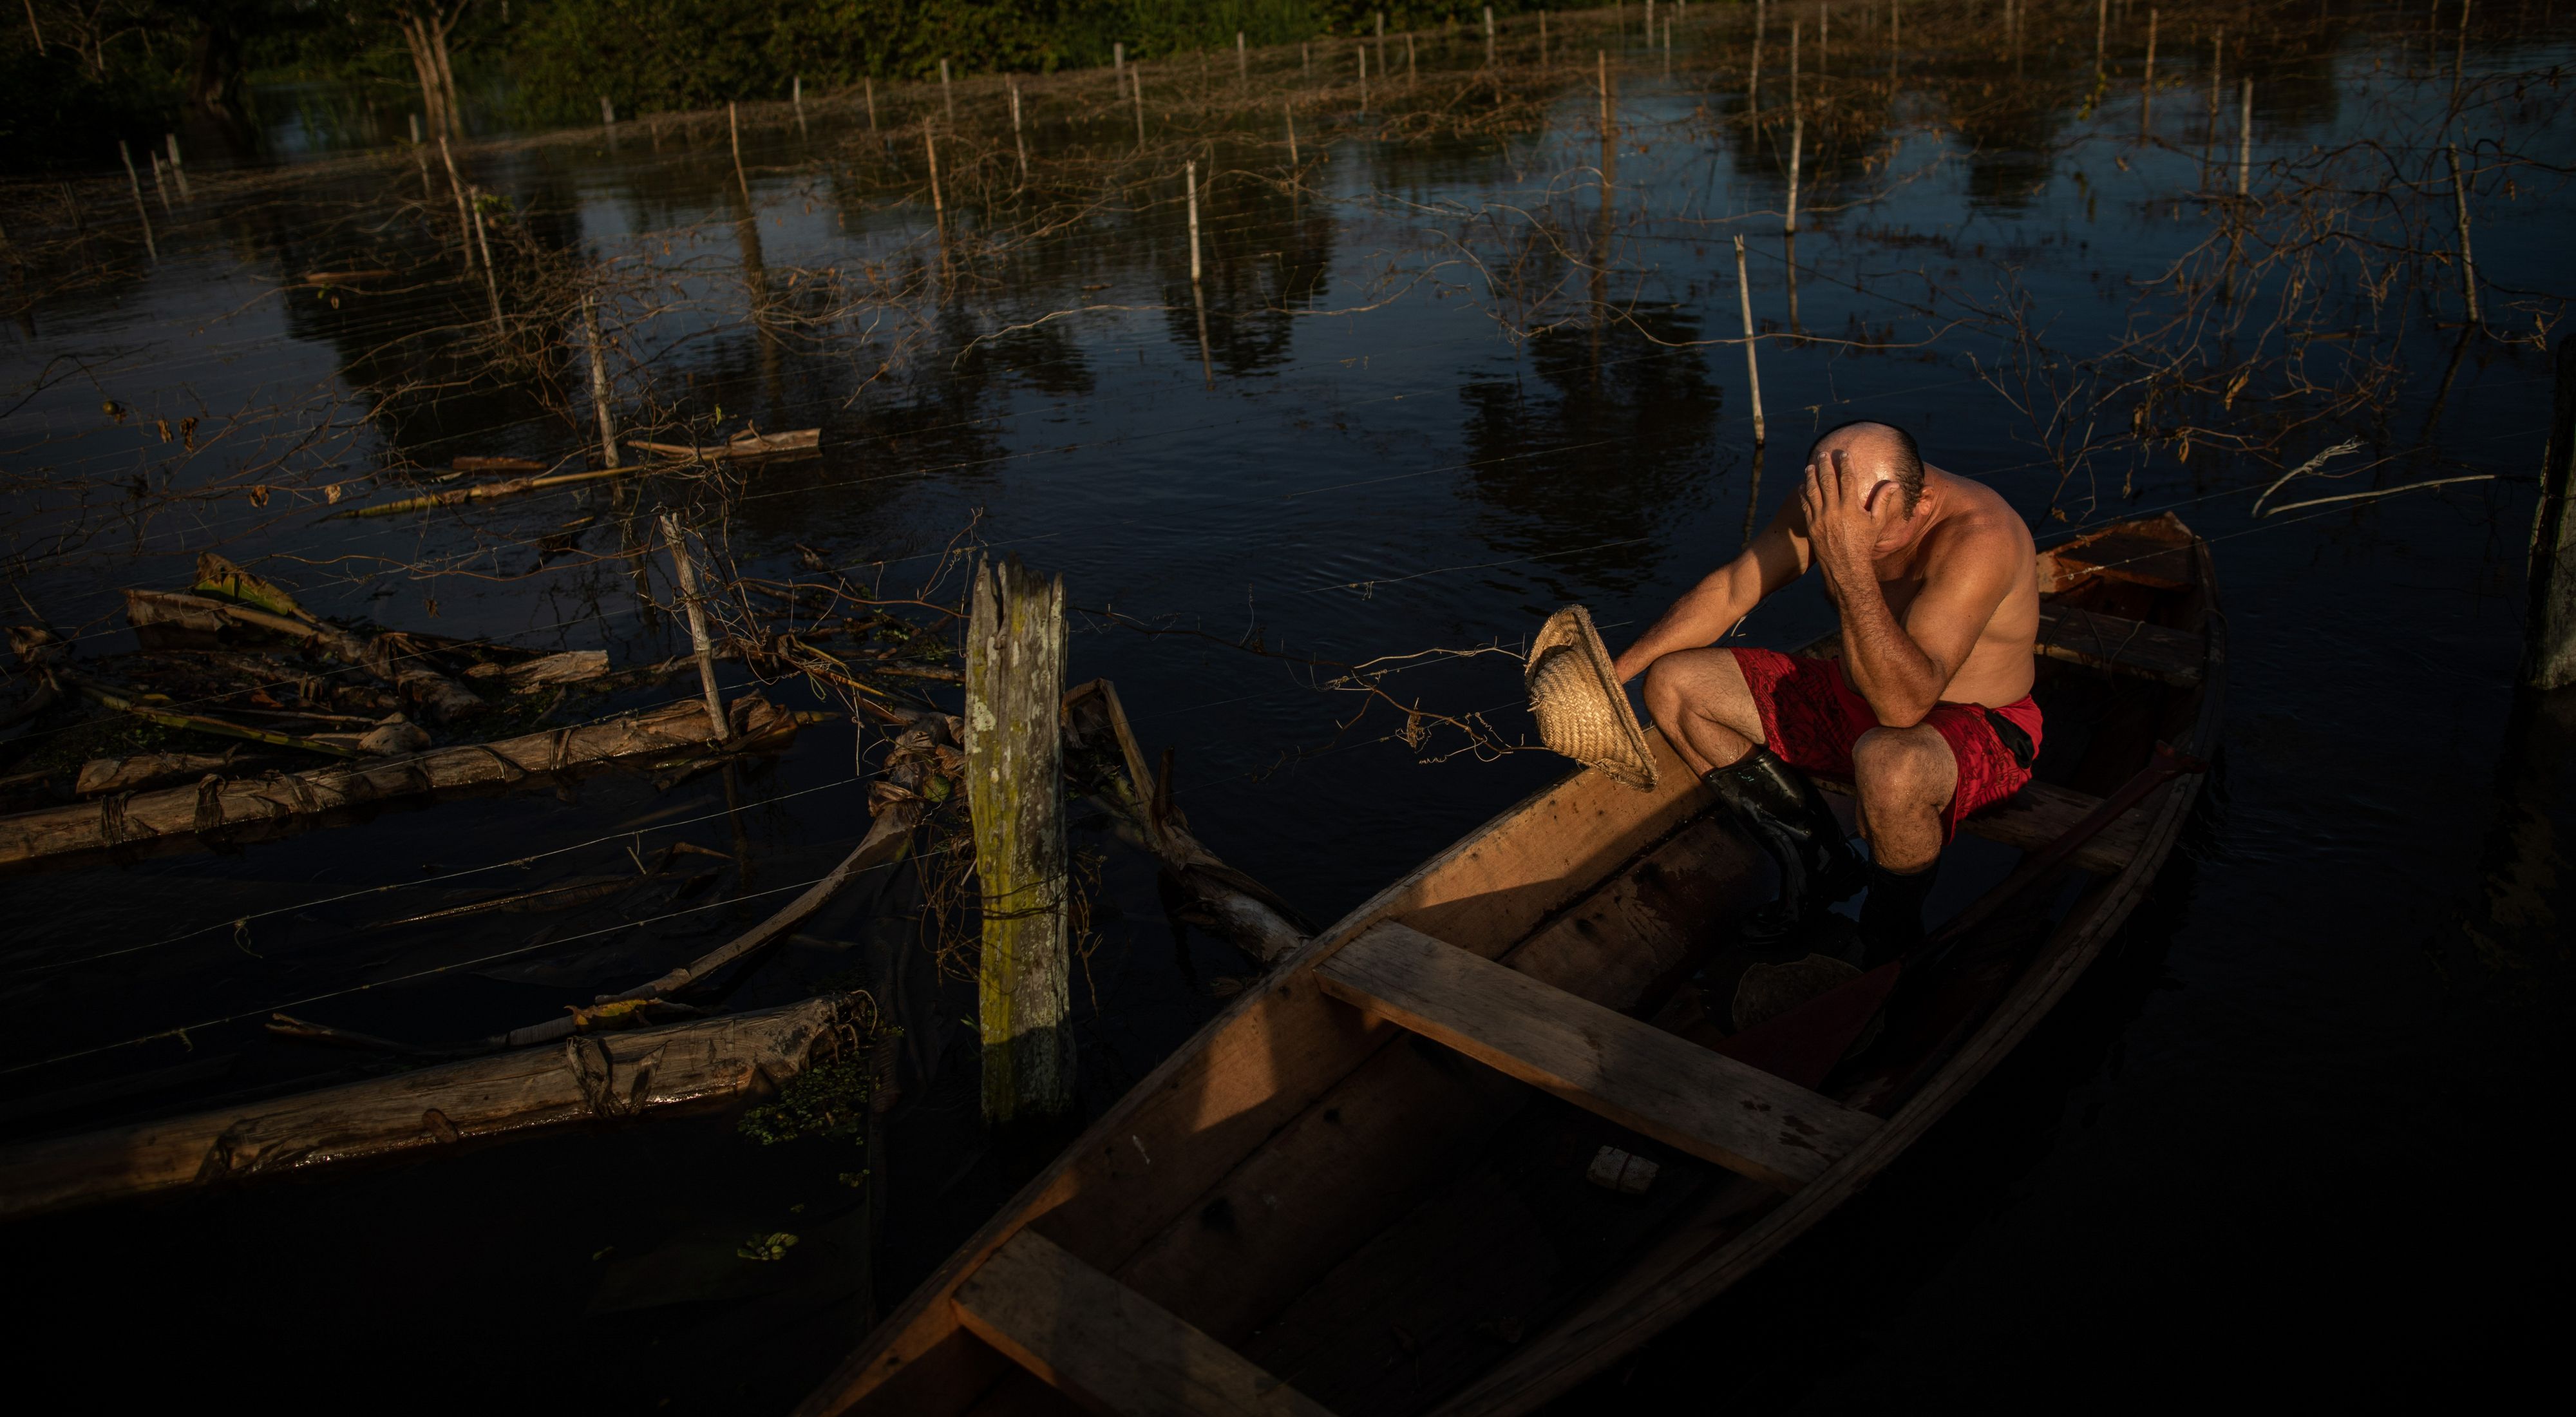  Agricultor sentado com a mão em sua cabeça em um barco lamentando a perda da sua plantação.